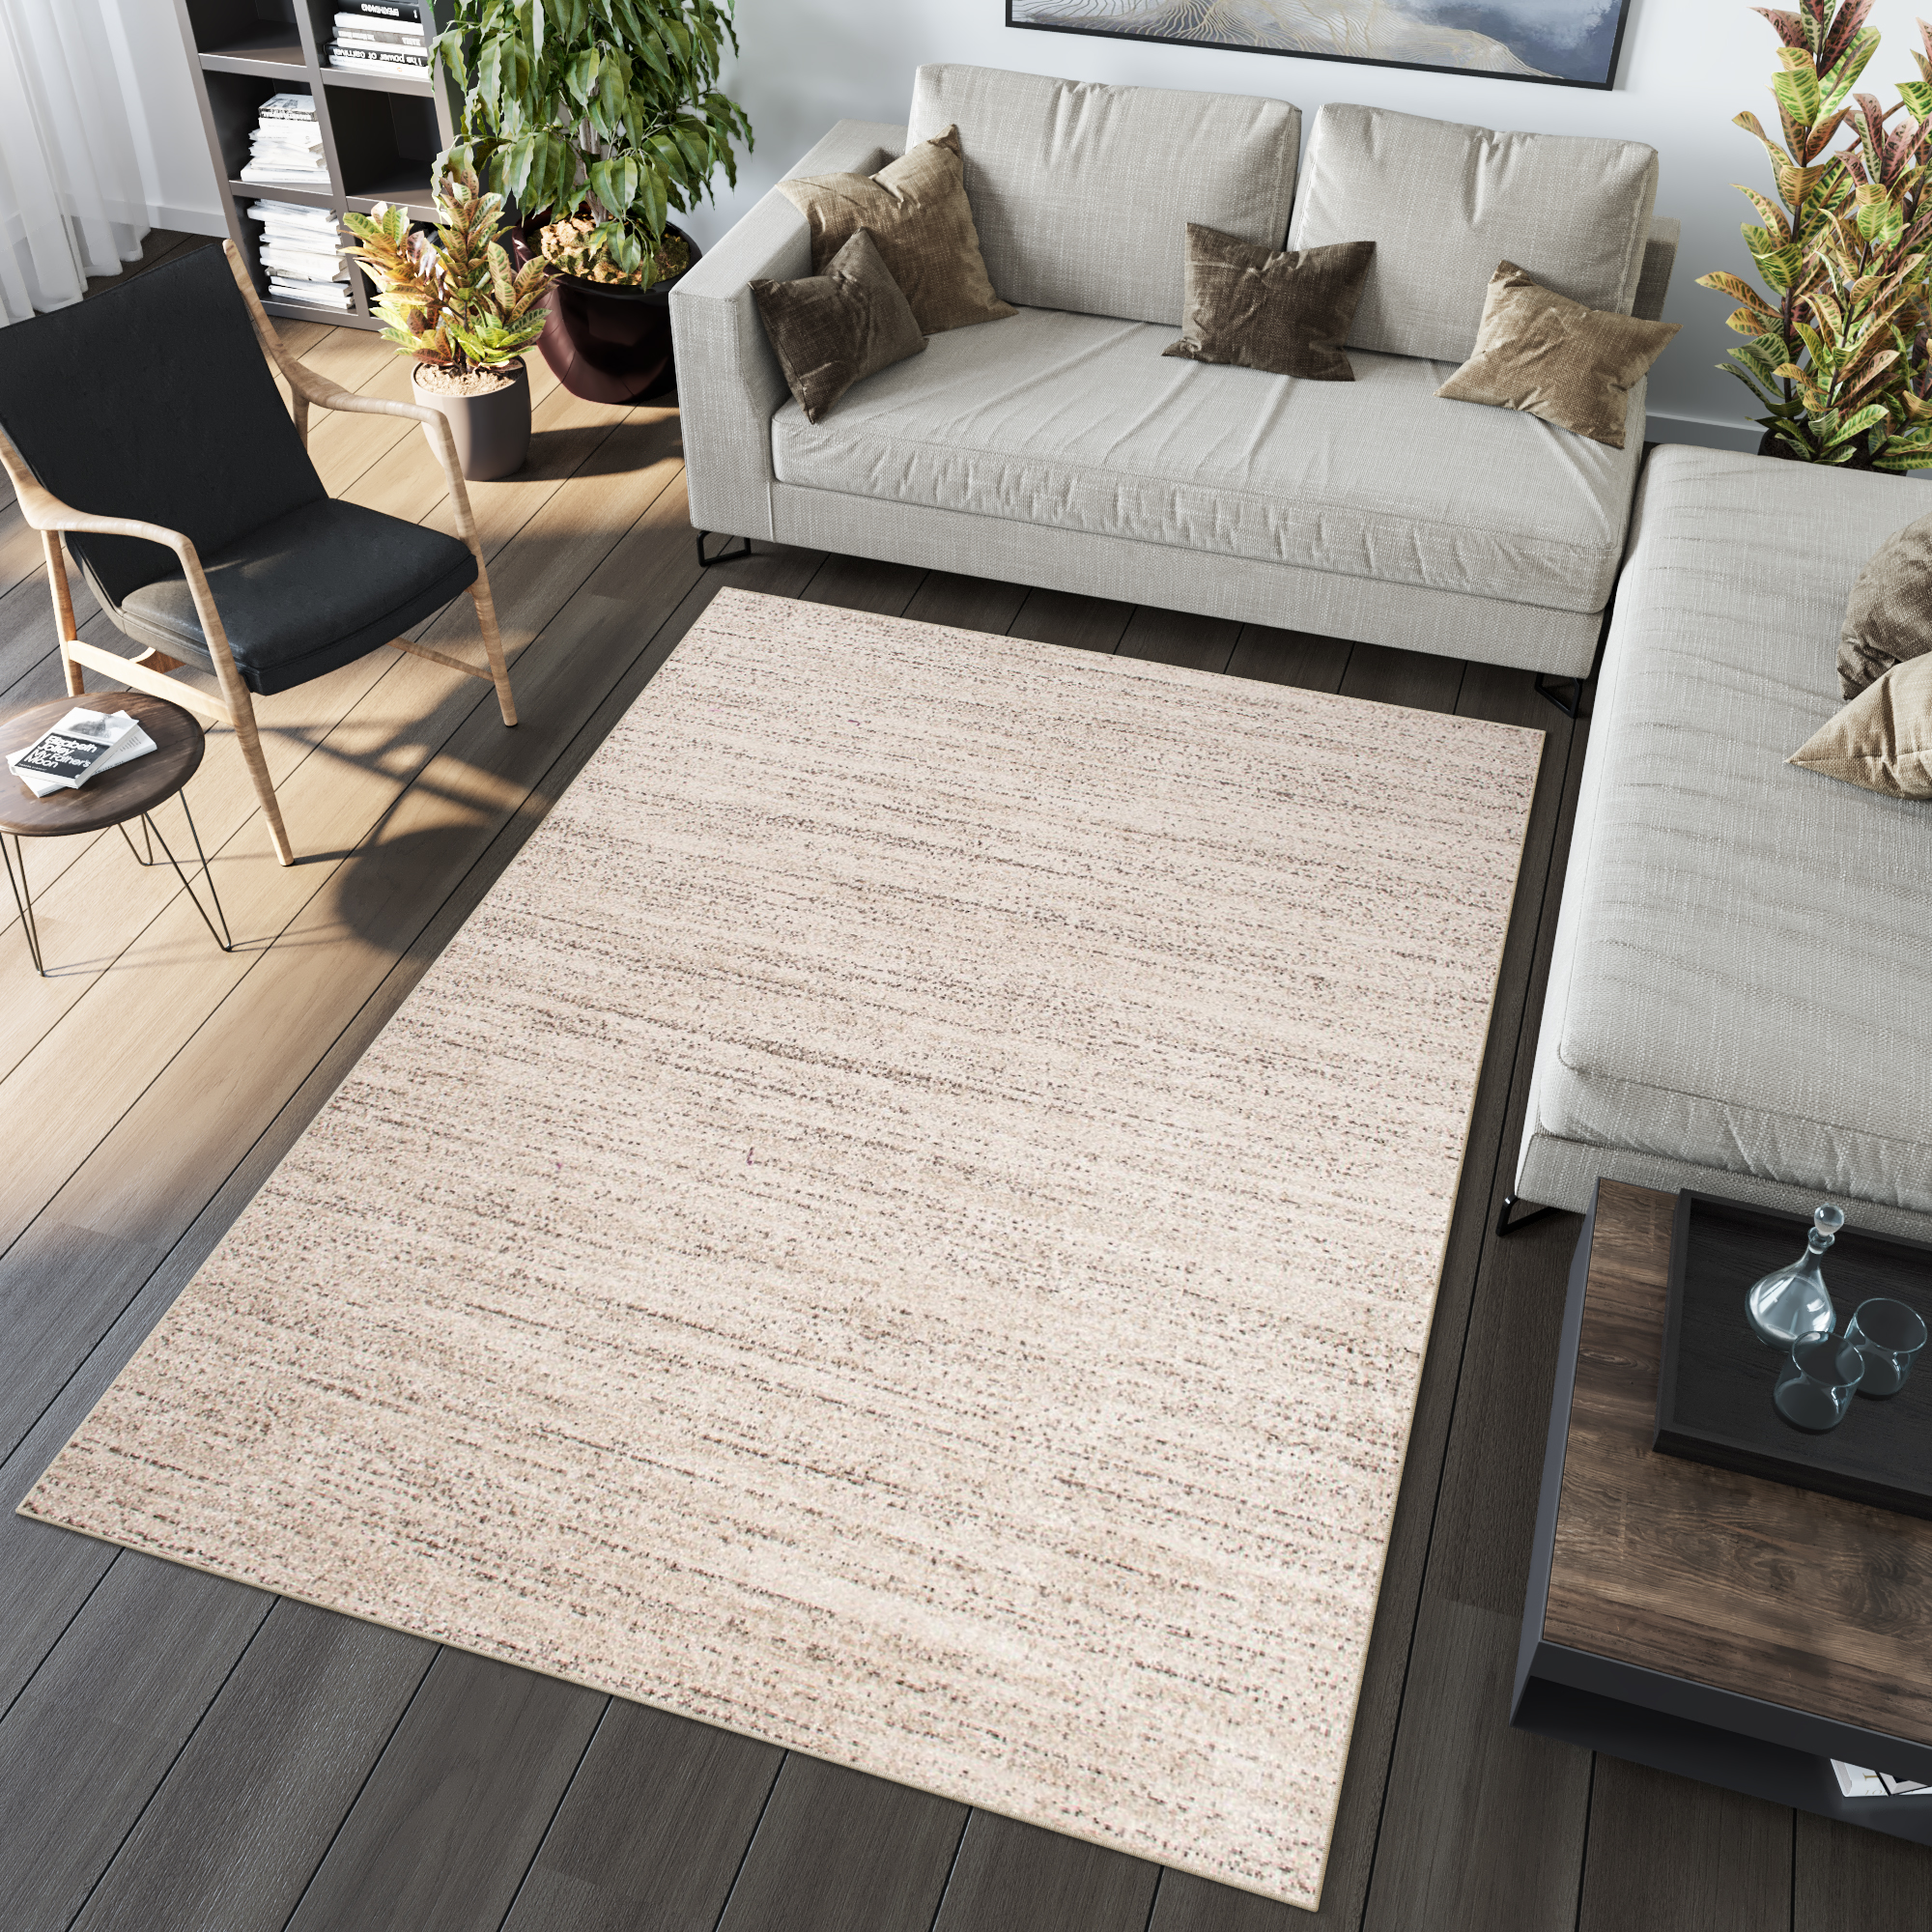 | Verwischt Creme Beige eBay Modern Design Teppich Teppiche Wohnzimmer Meliert Kurzflor